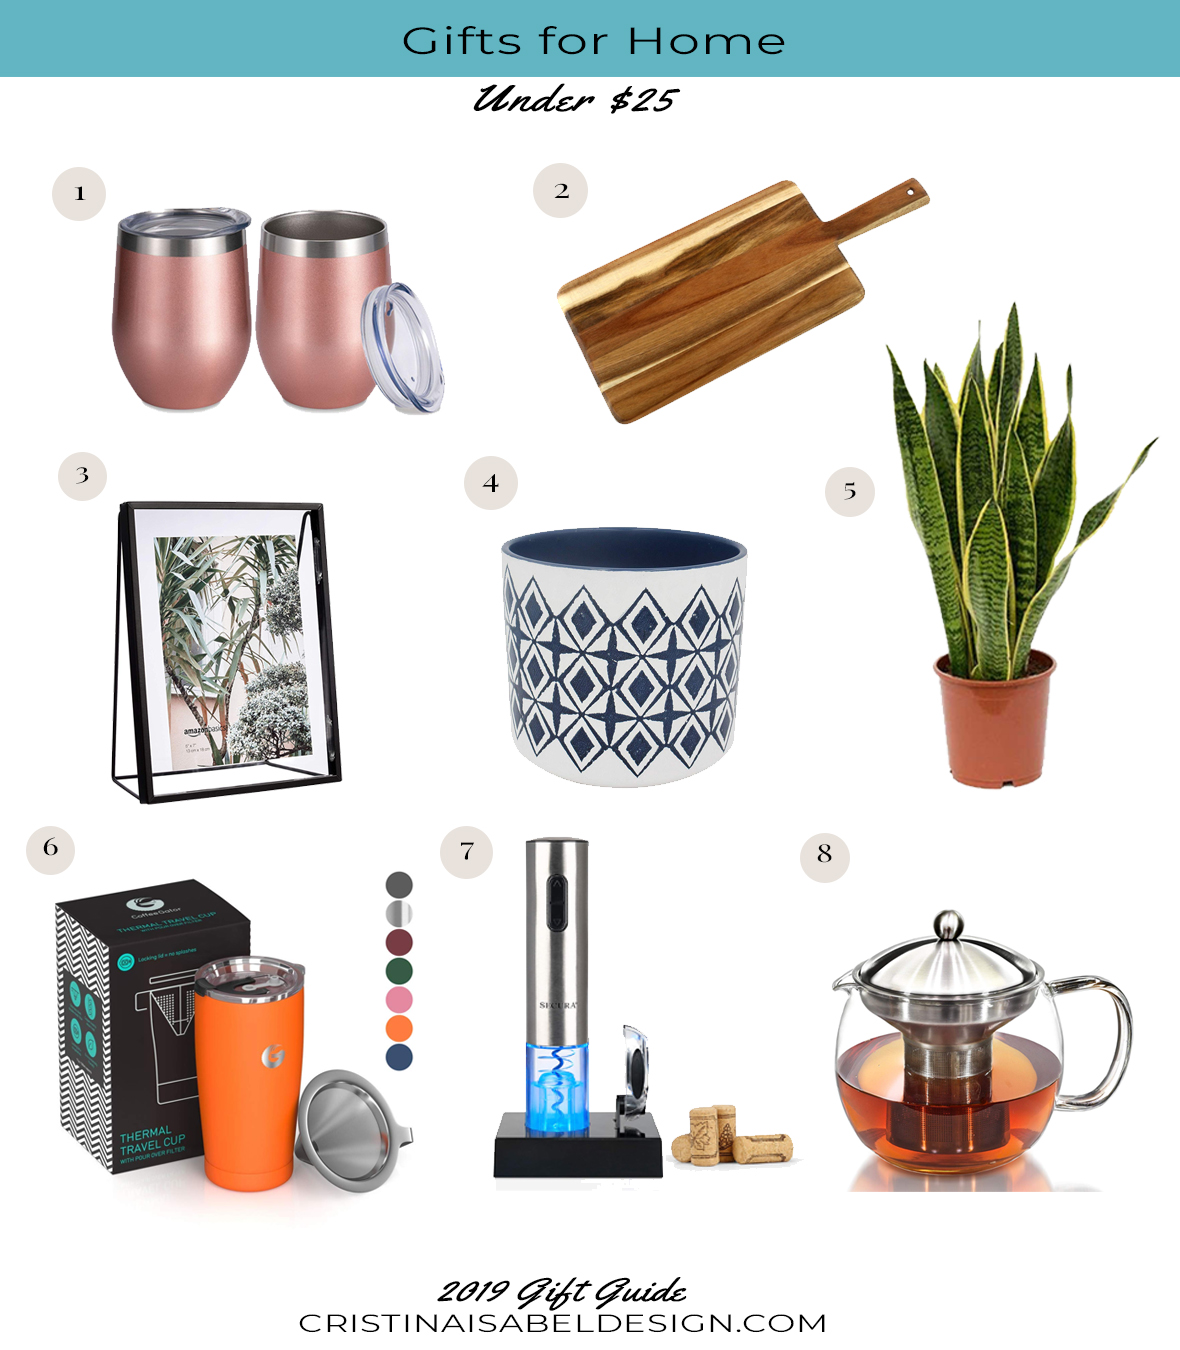 Gift Guide for Home under $25 - Cristina Isabel Design